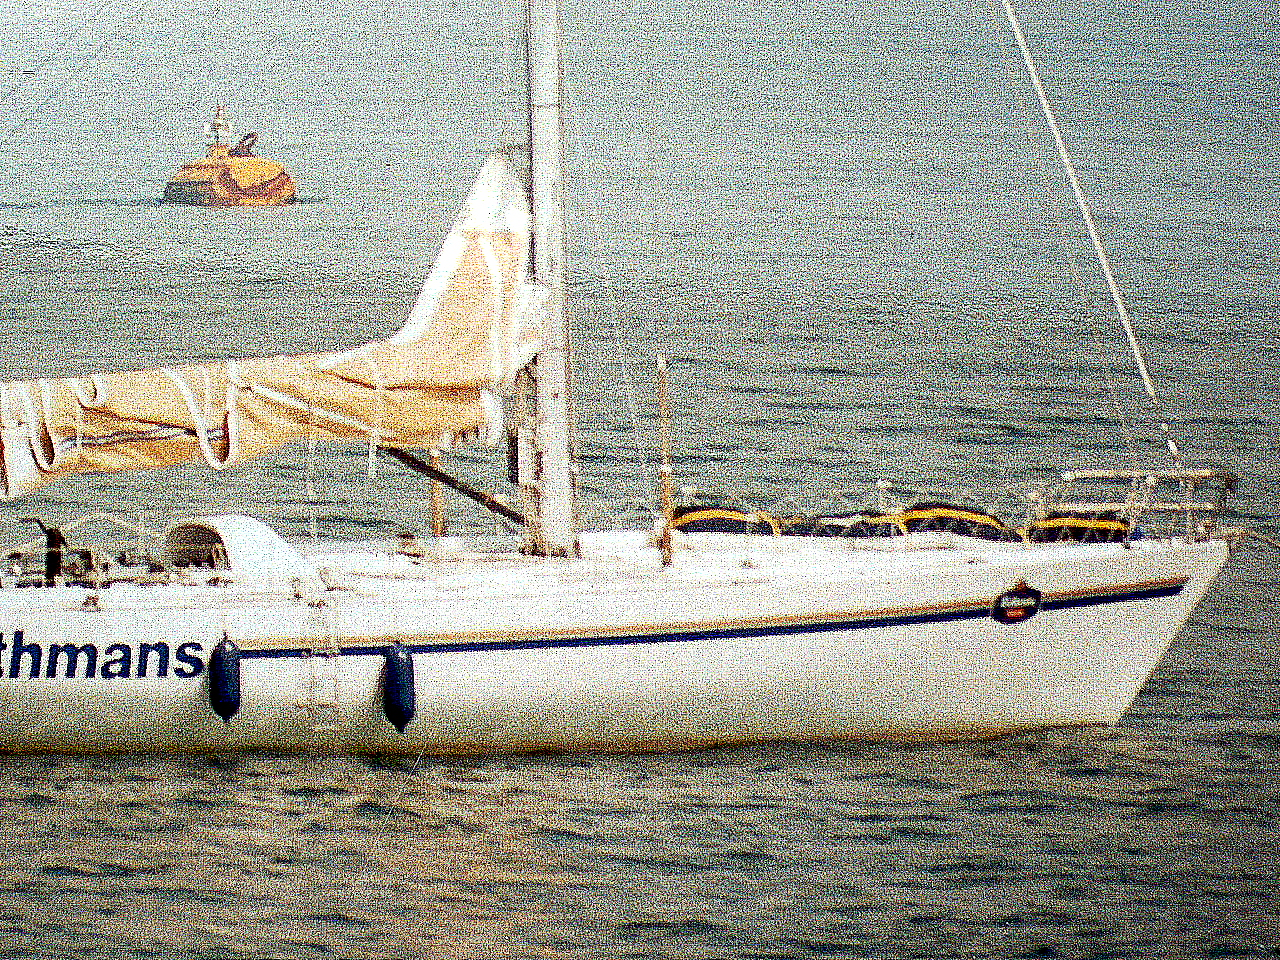 ior maxi yacht for sale